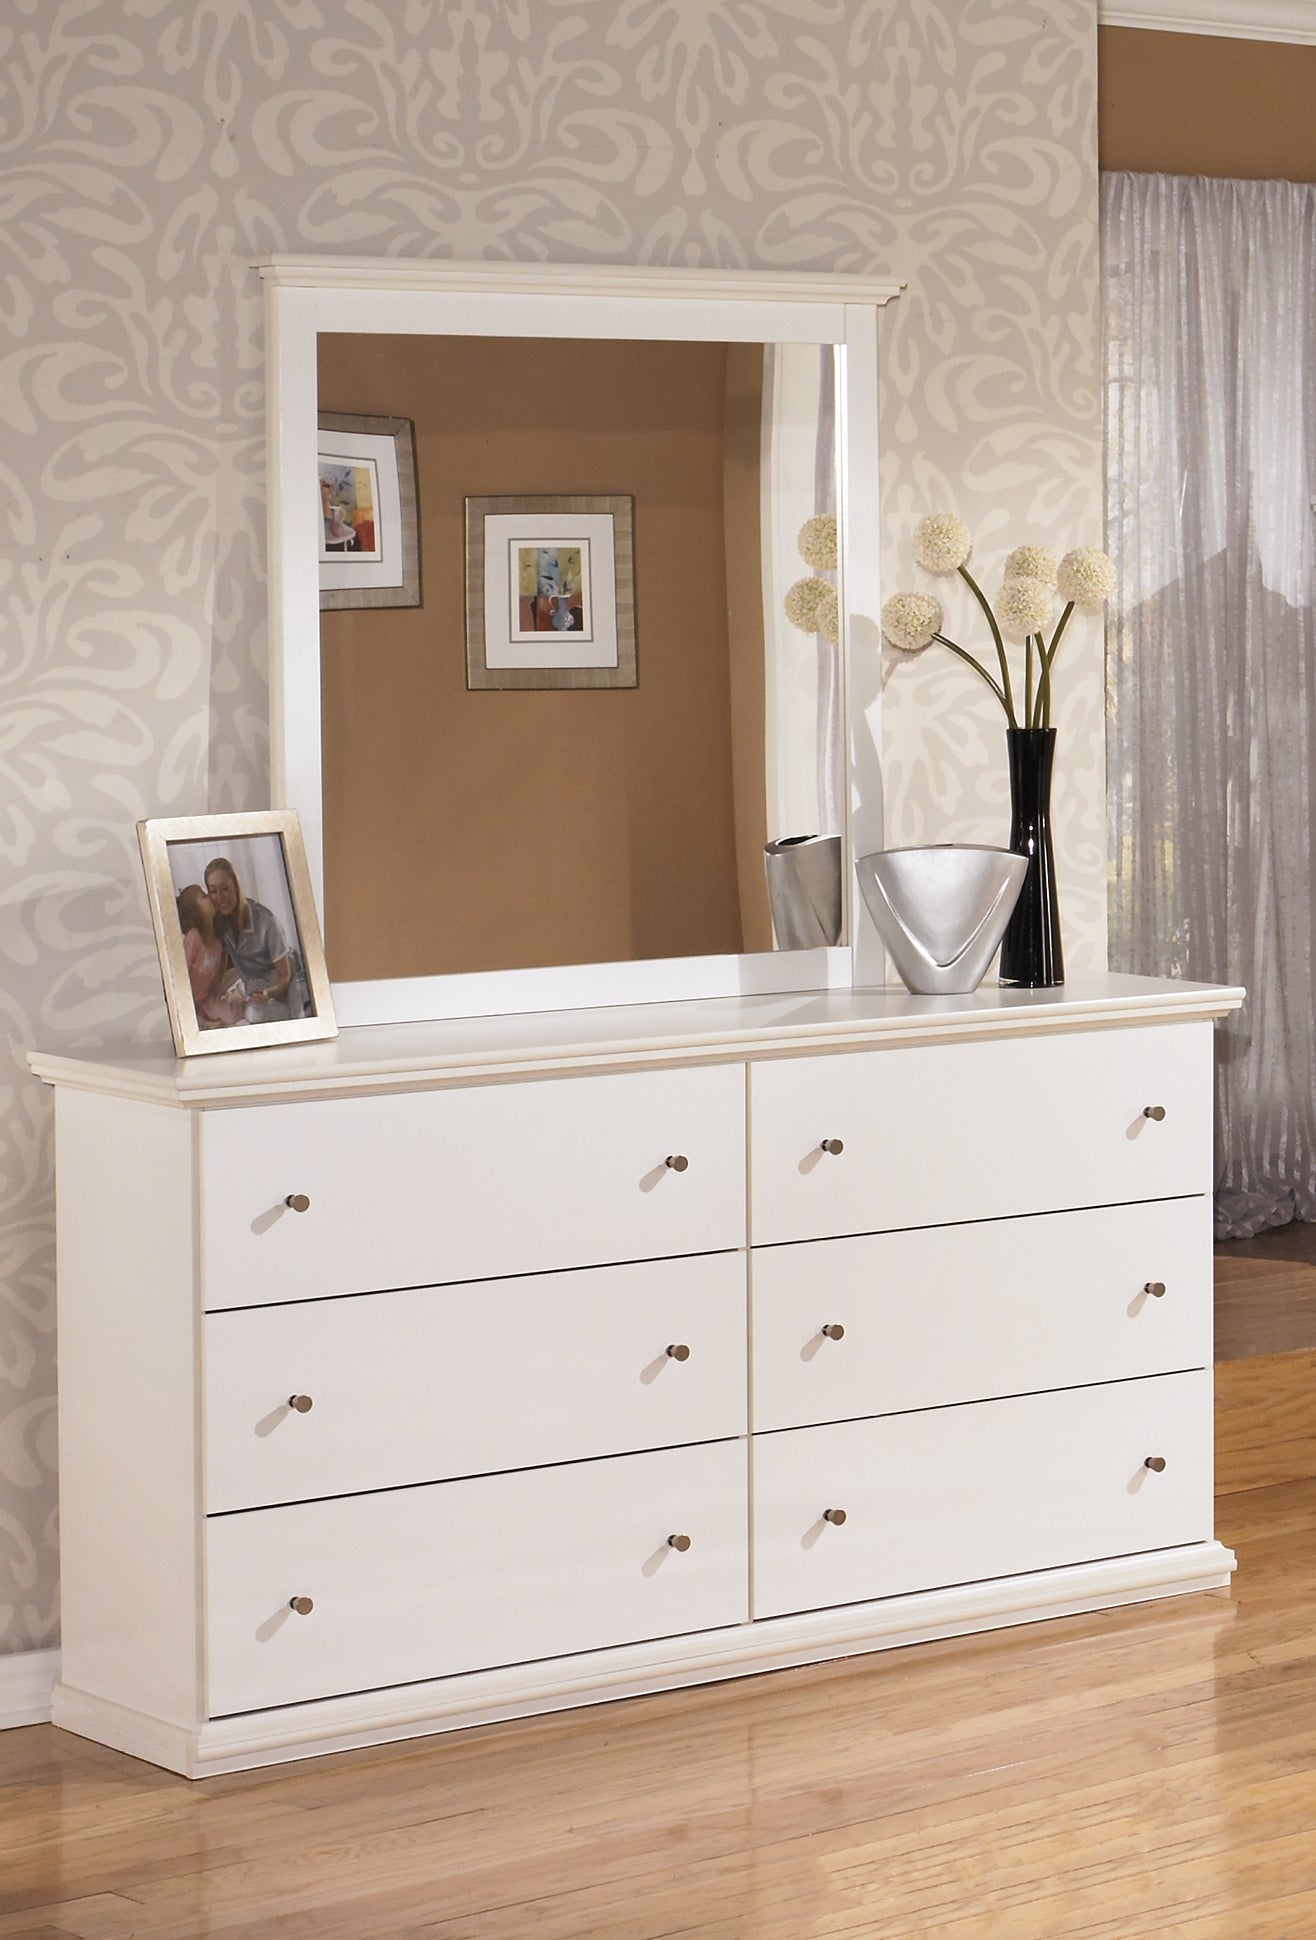 Bostwick Shoals Queen Panel Bed, Dresser, Mirror and 2 Nightstands